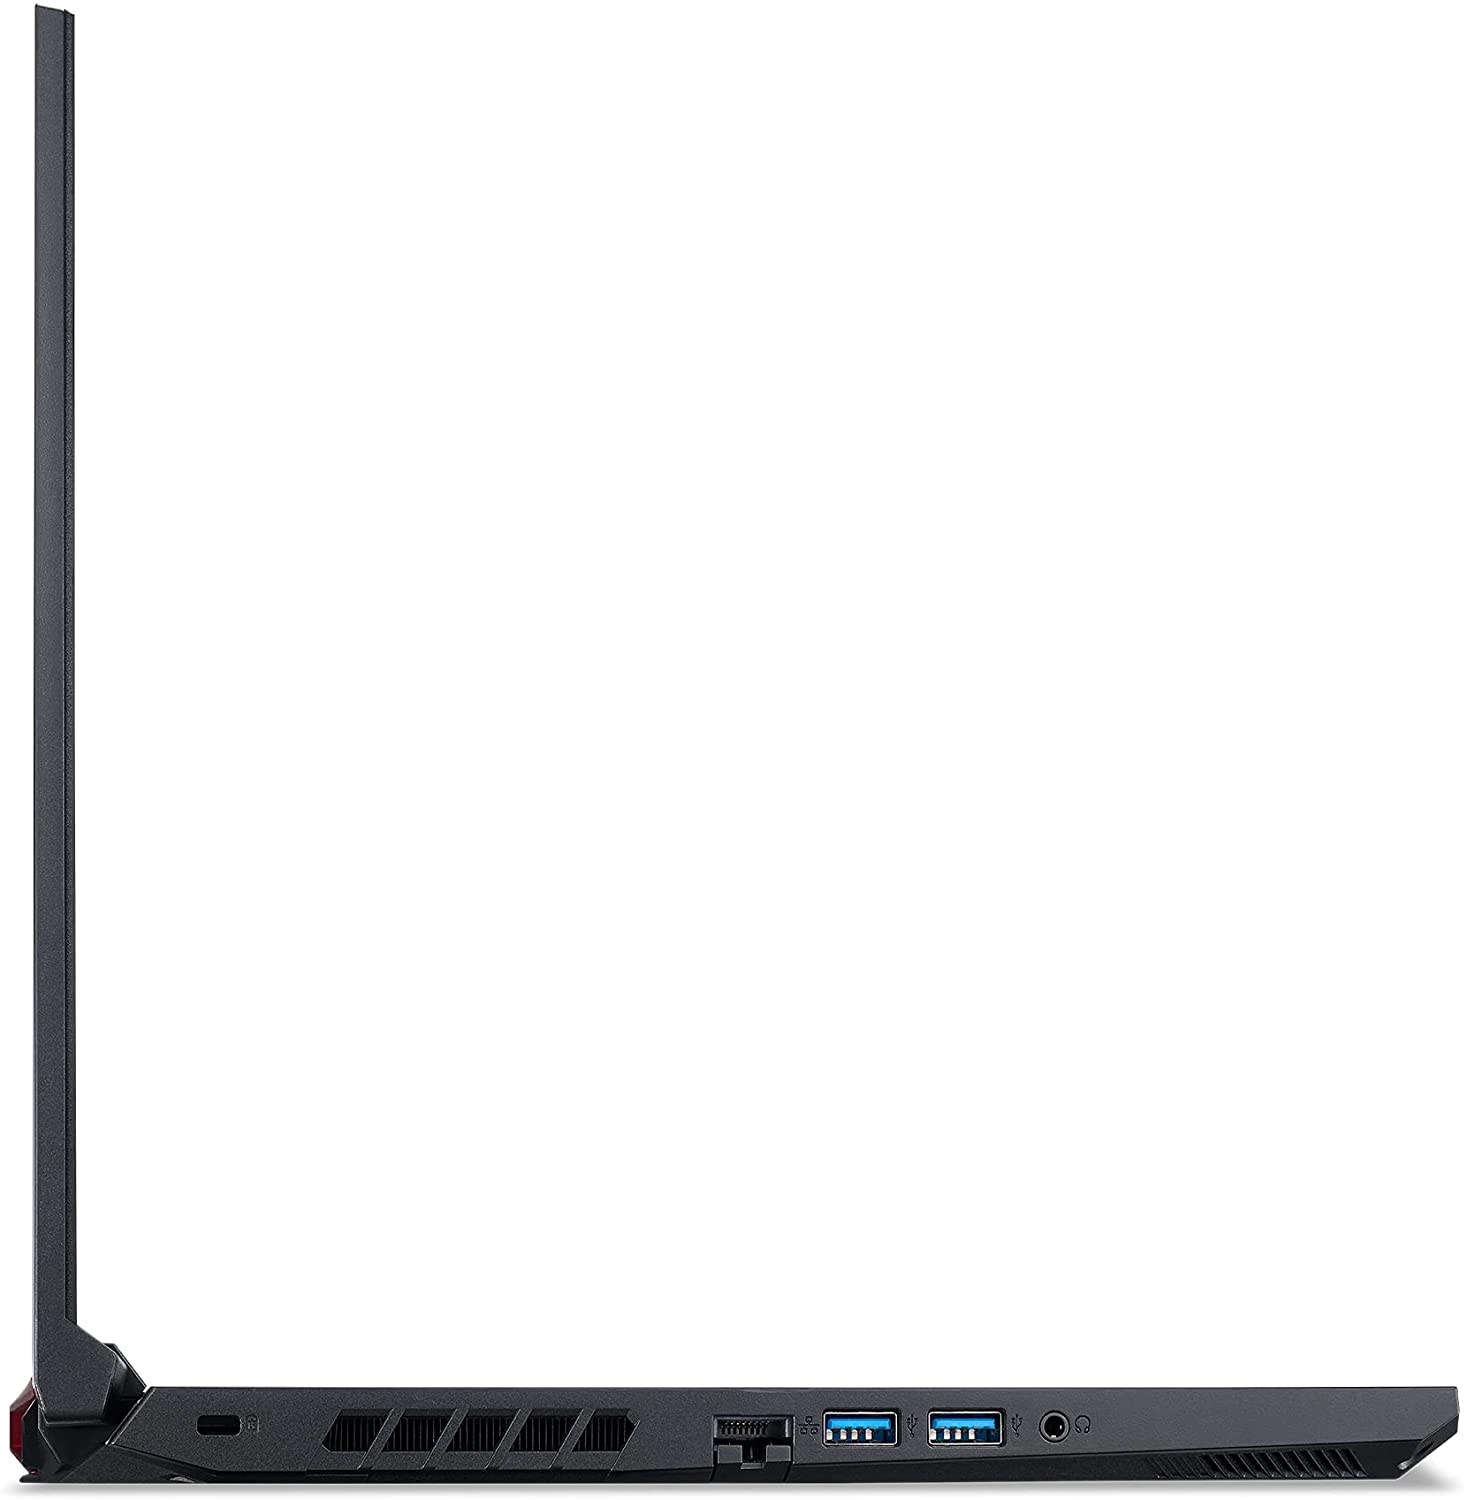 Acer AN515-55-53E5 laptop image